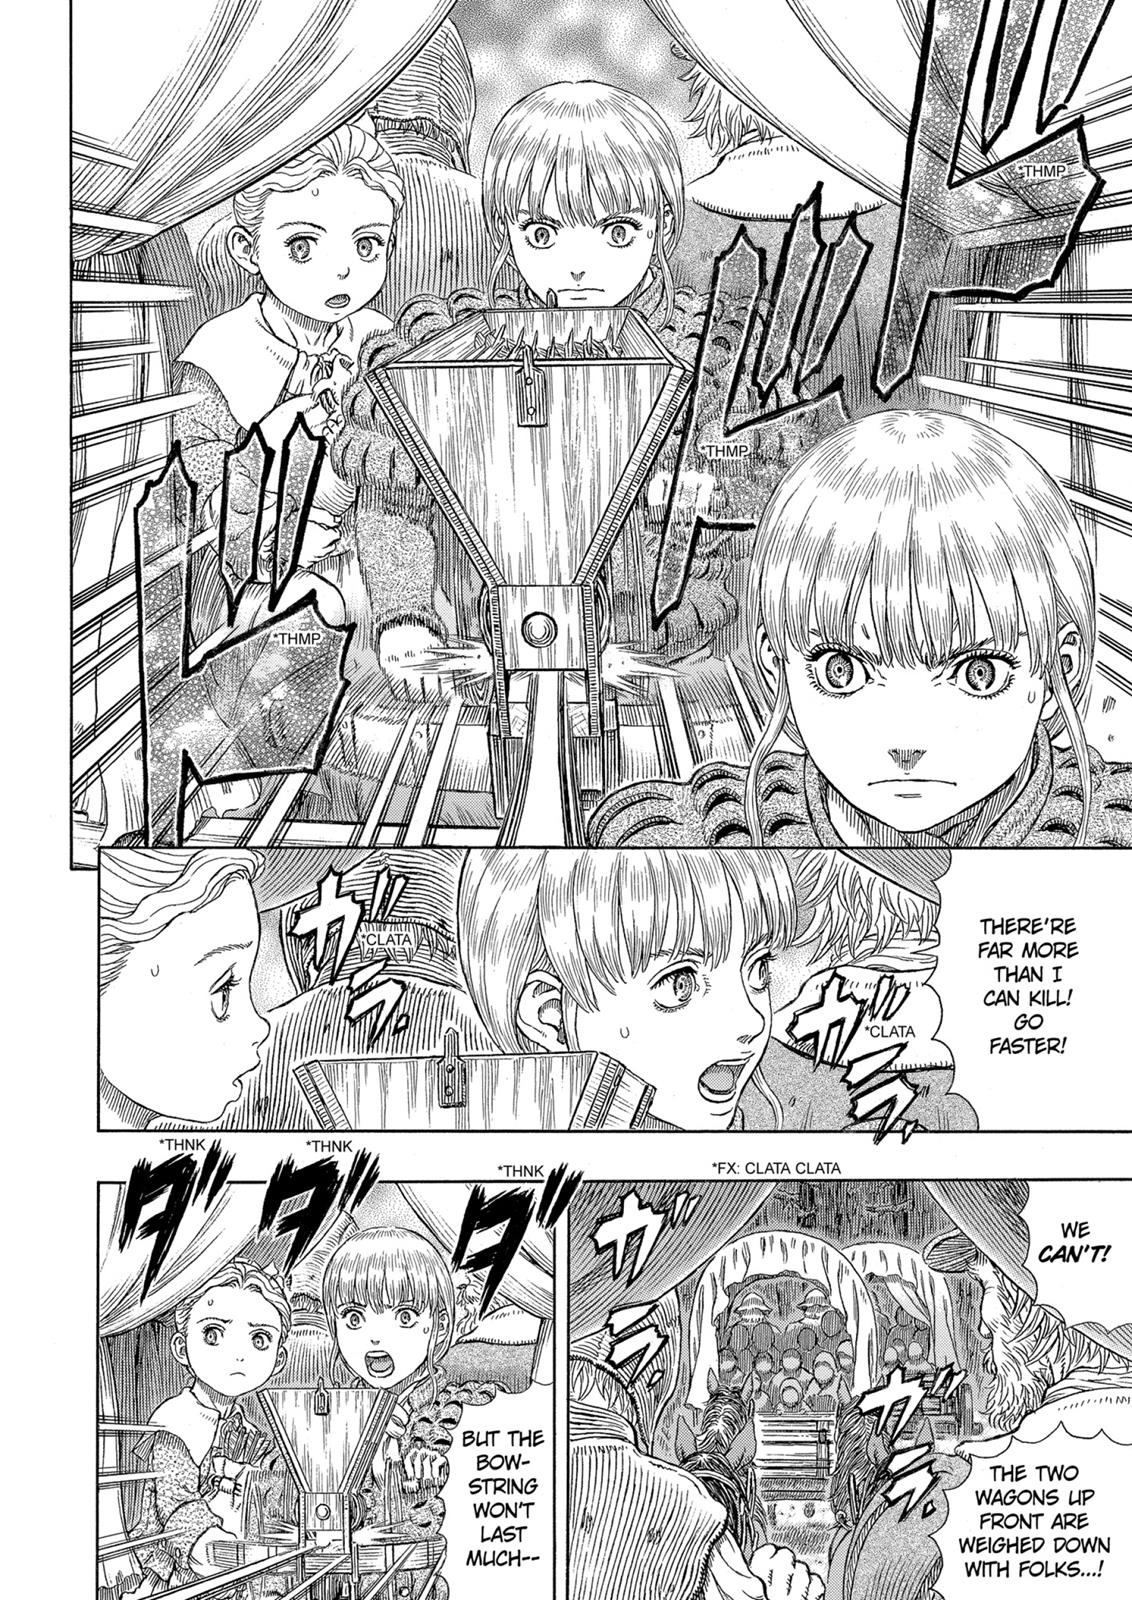 Berserk Manga Chapter 332 image 06